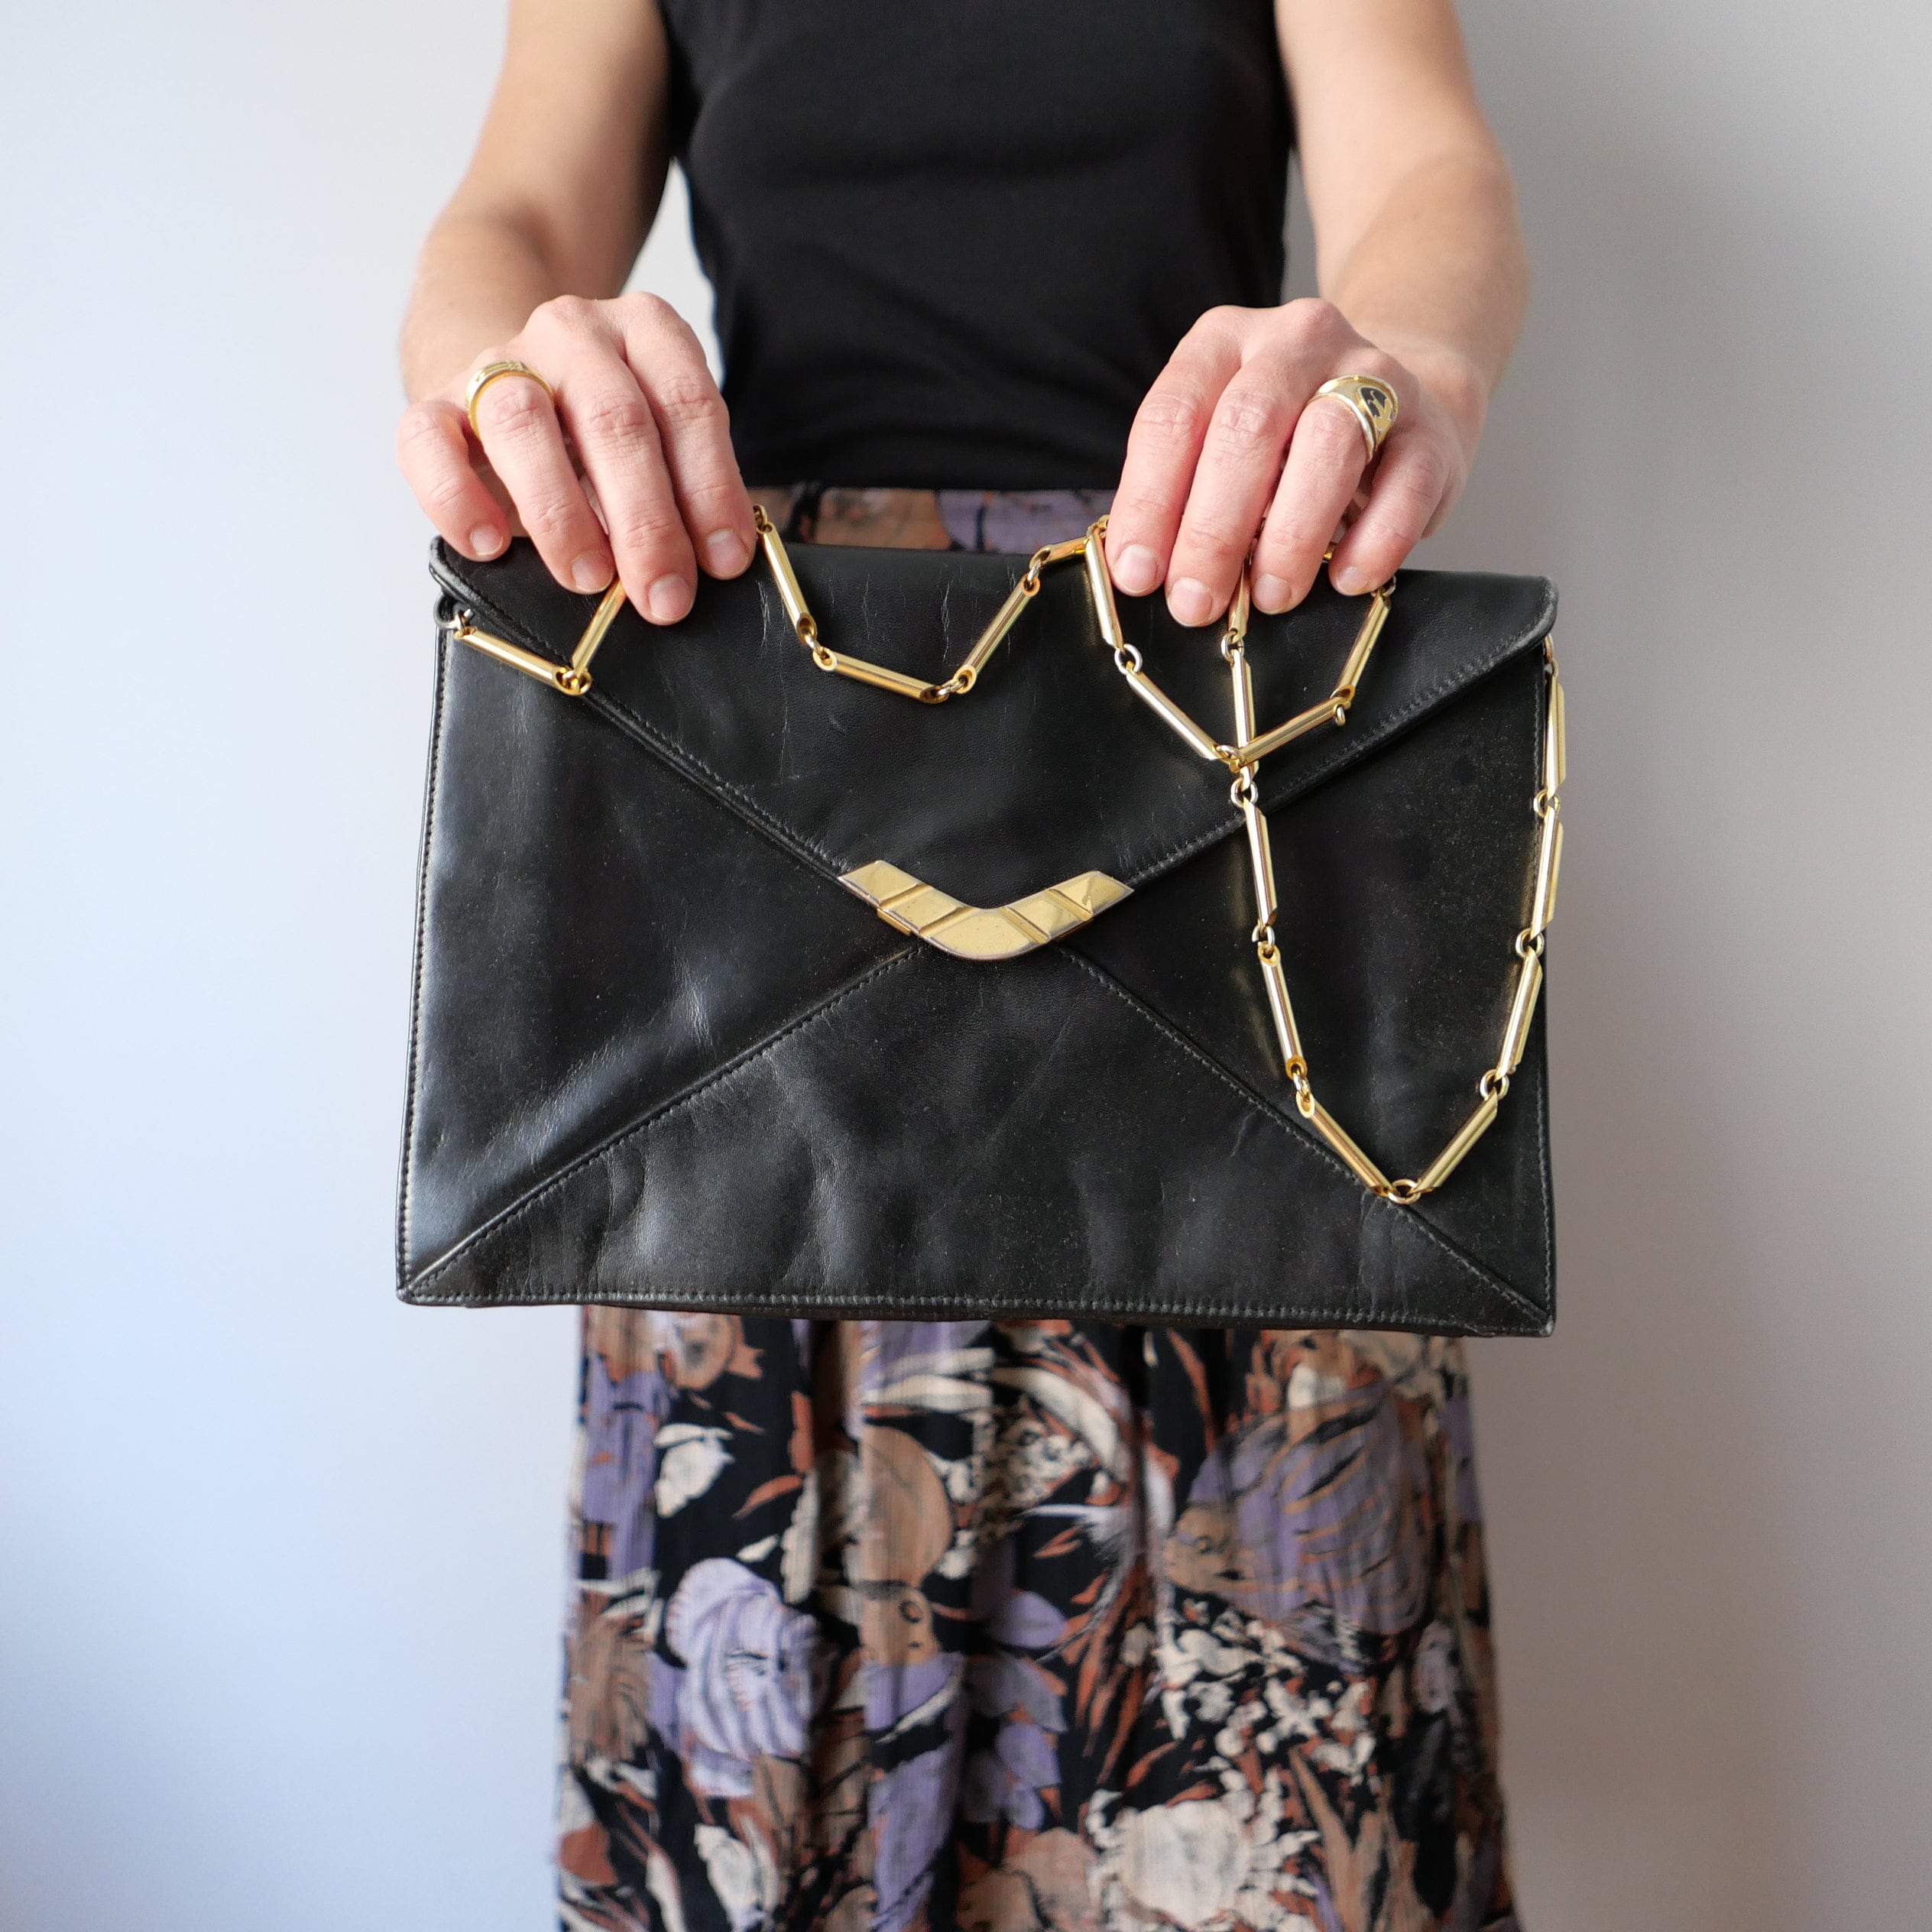 TRUE Vintage designer style chain strap handbag shoulder bag + COOL  SUNGLASSES